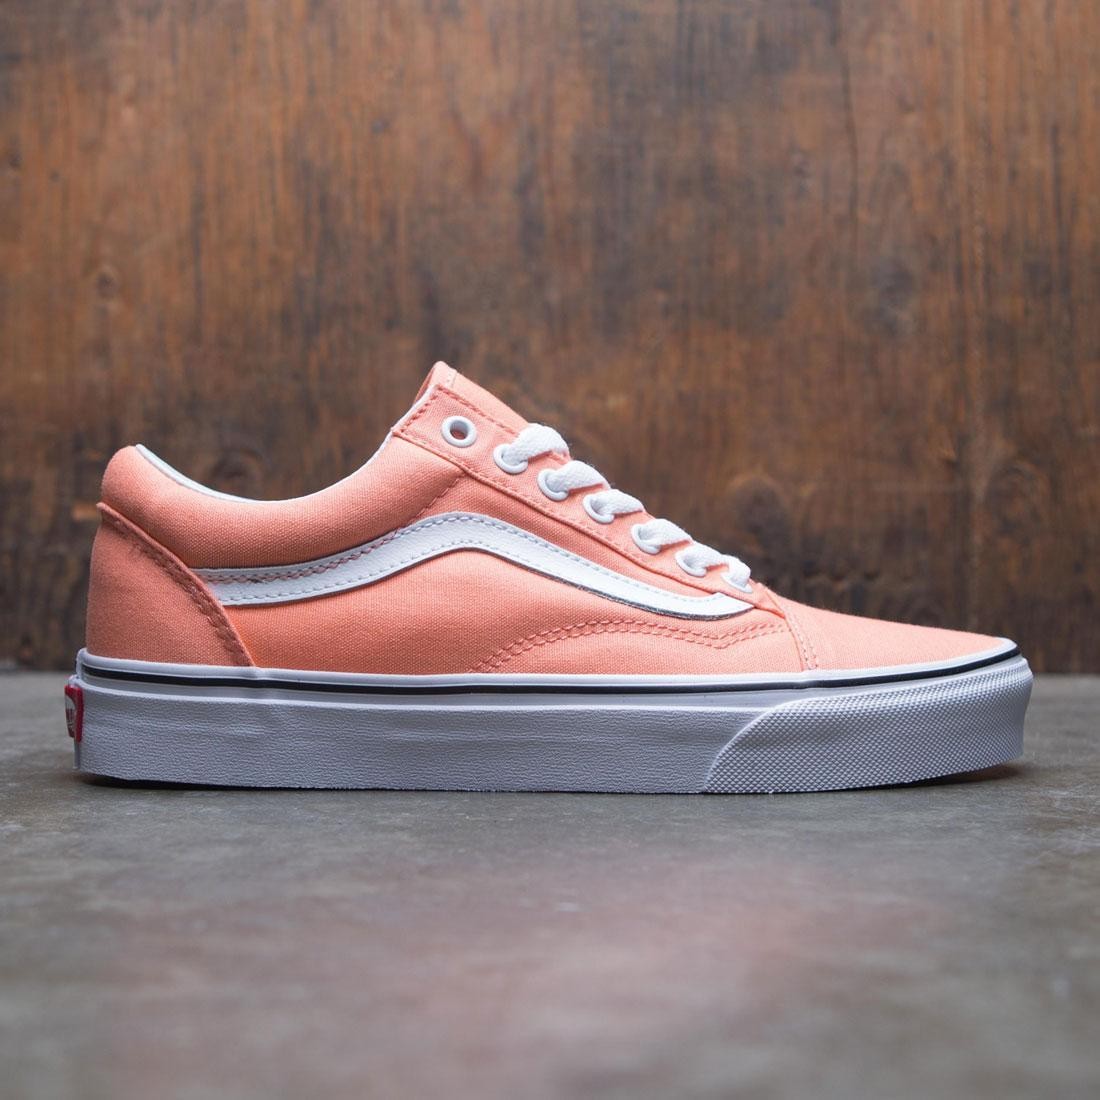 peach vans shoes